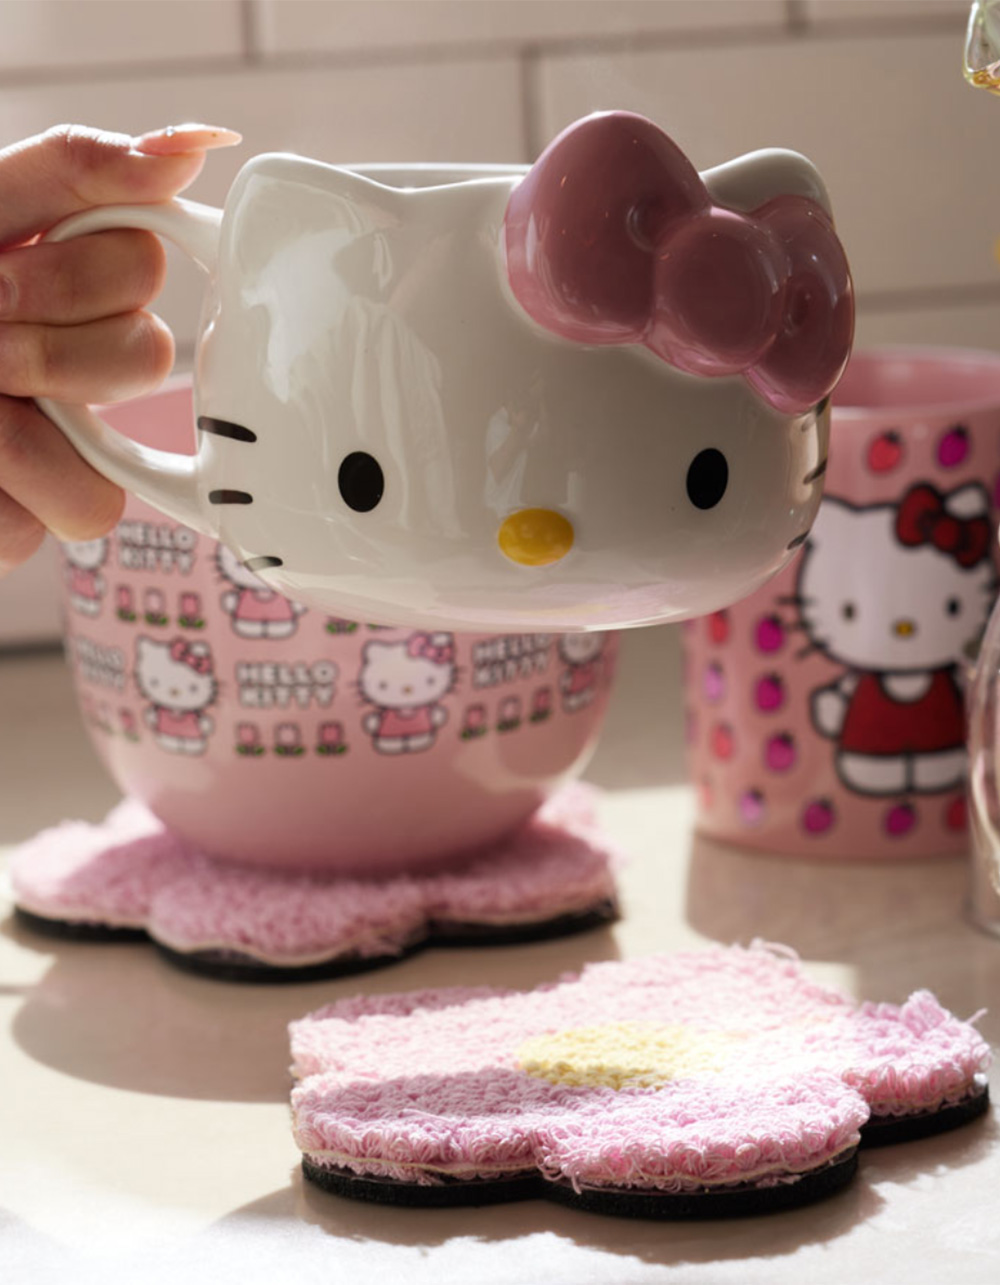 Hello Kitty Ceramics